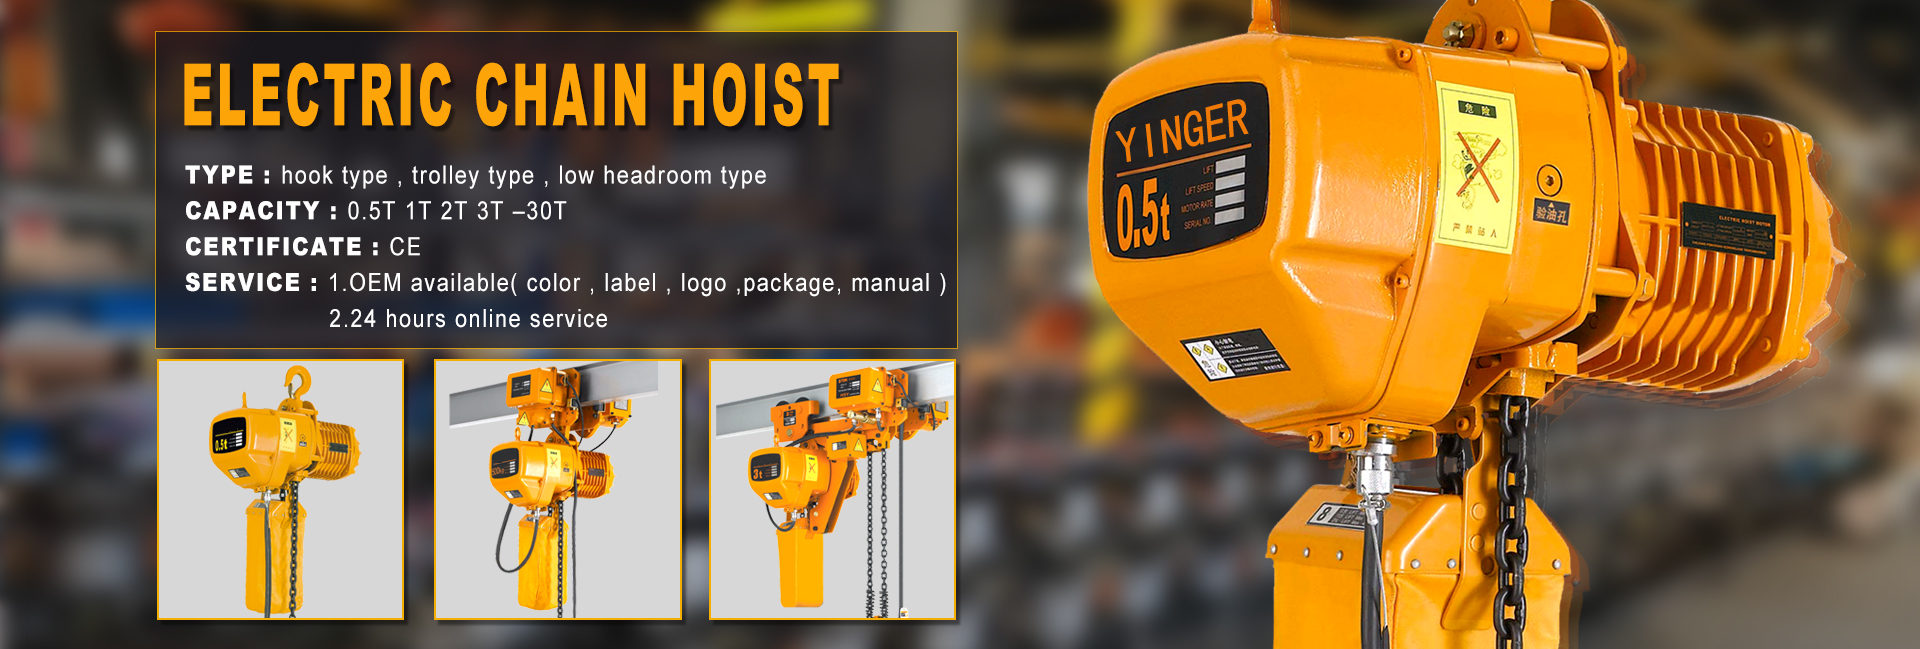 yinger lifting hoisting equipment.jpg